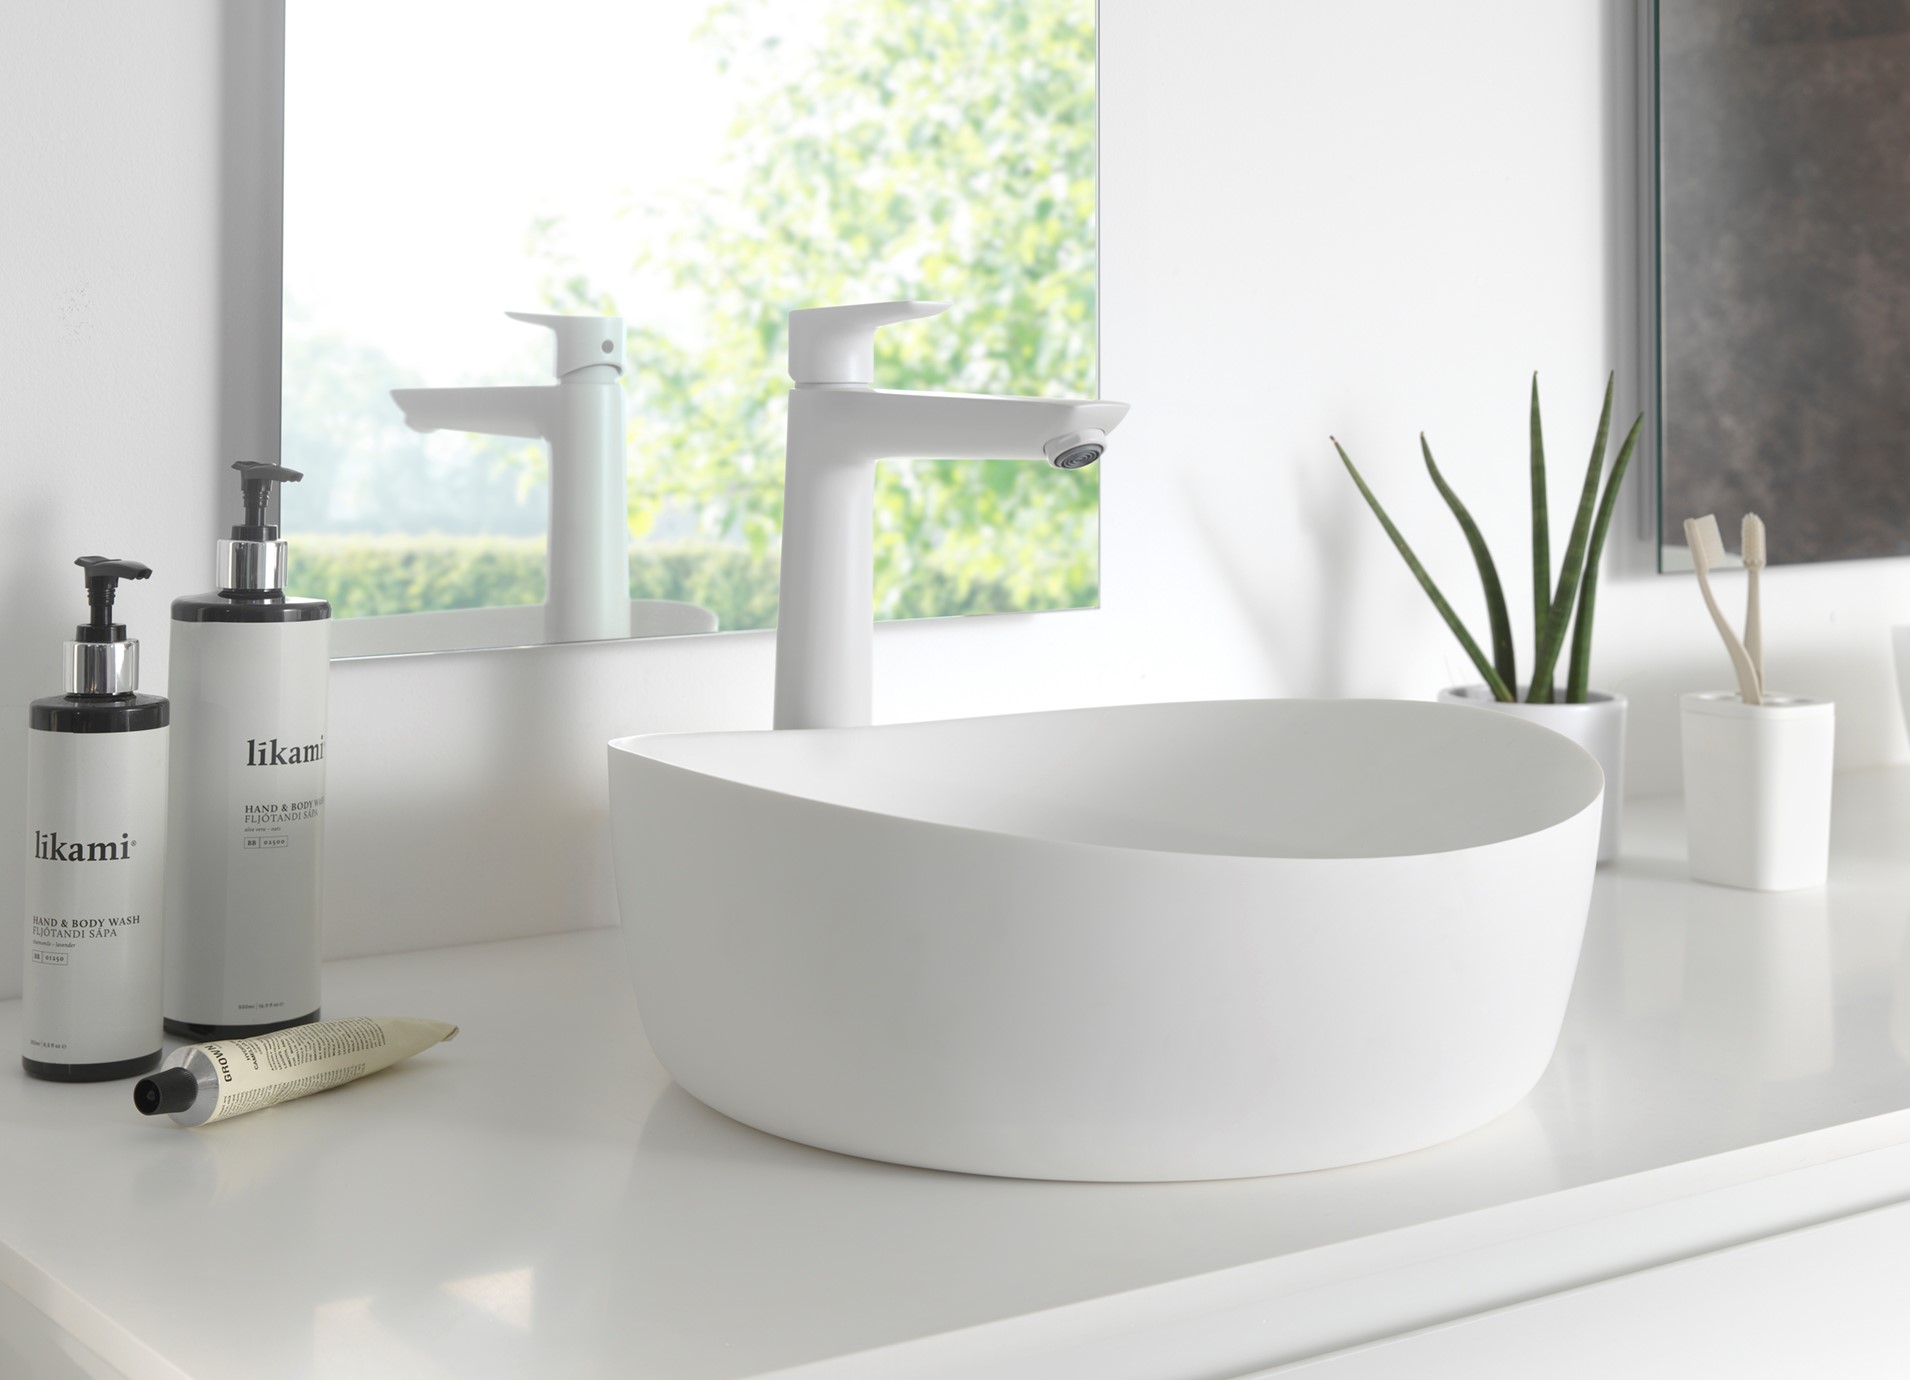 Foto : Jouw badkamer in trendy kleuren met Hansgrohe FinishPlus!